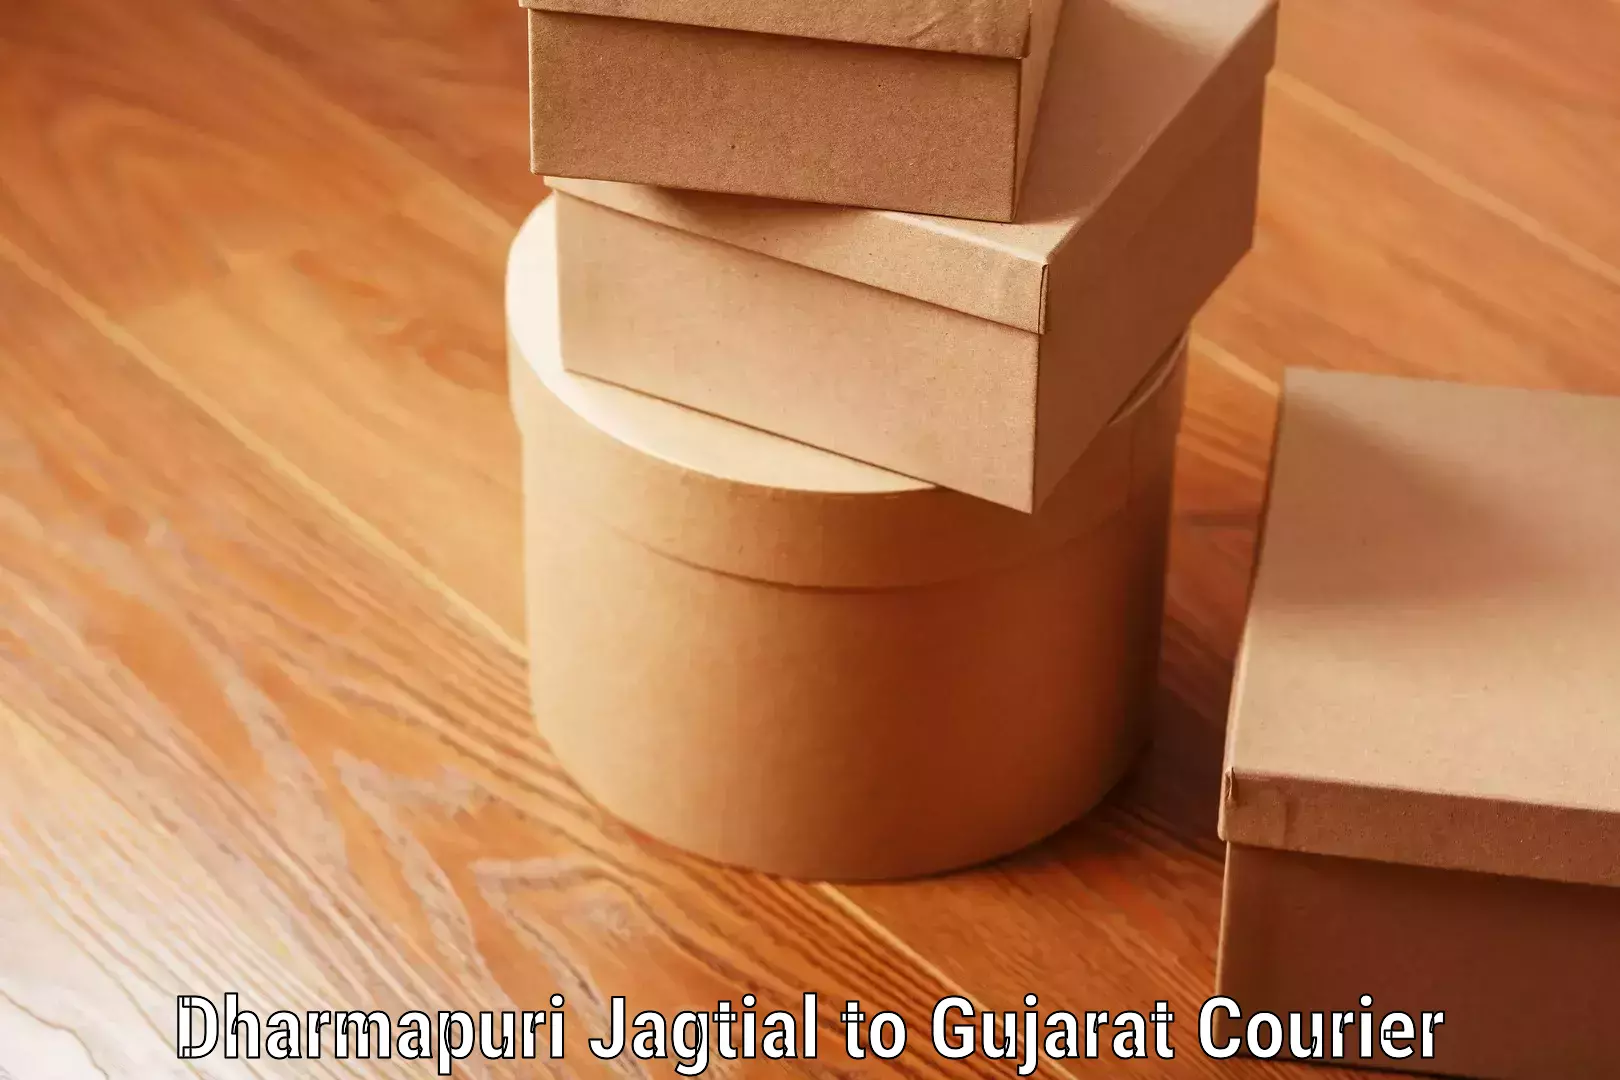 Luggage delivery providers Dharmapuri Jagtial to Gujarat